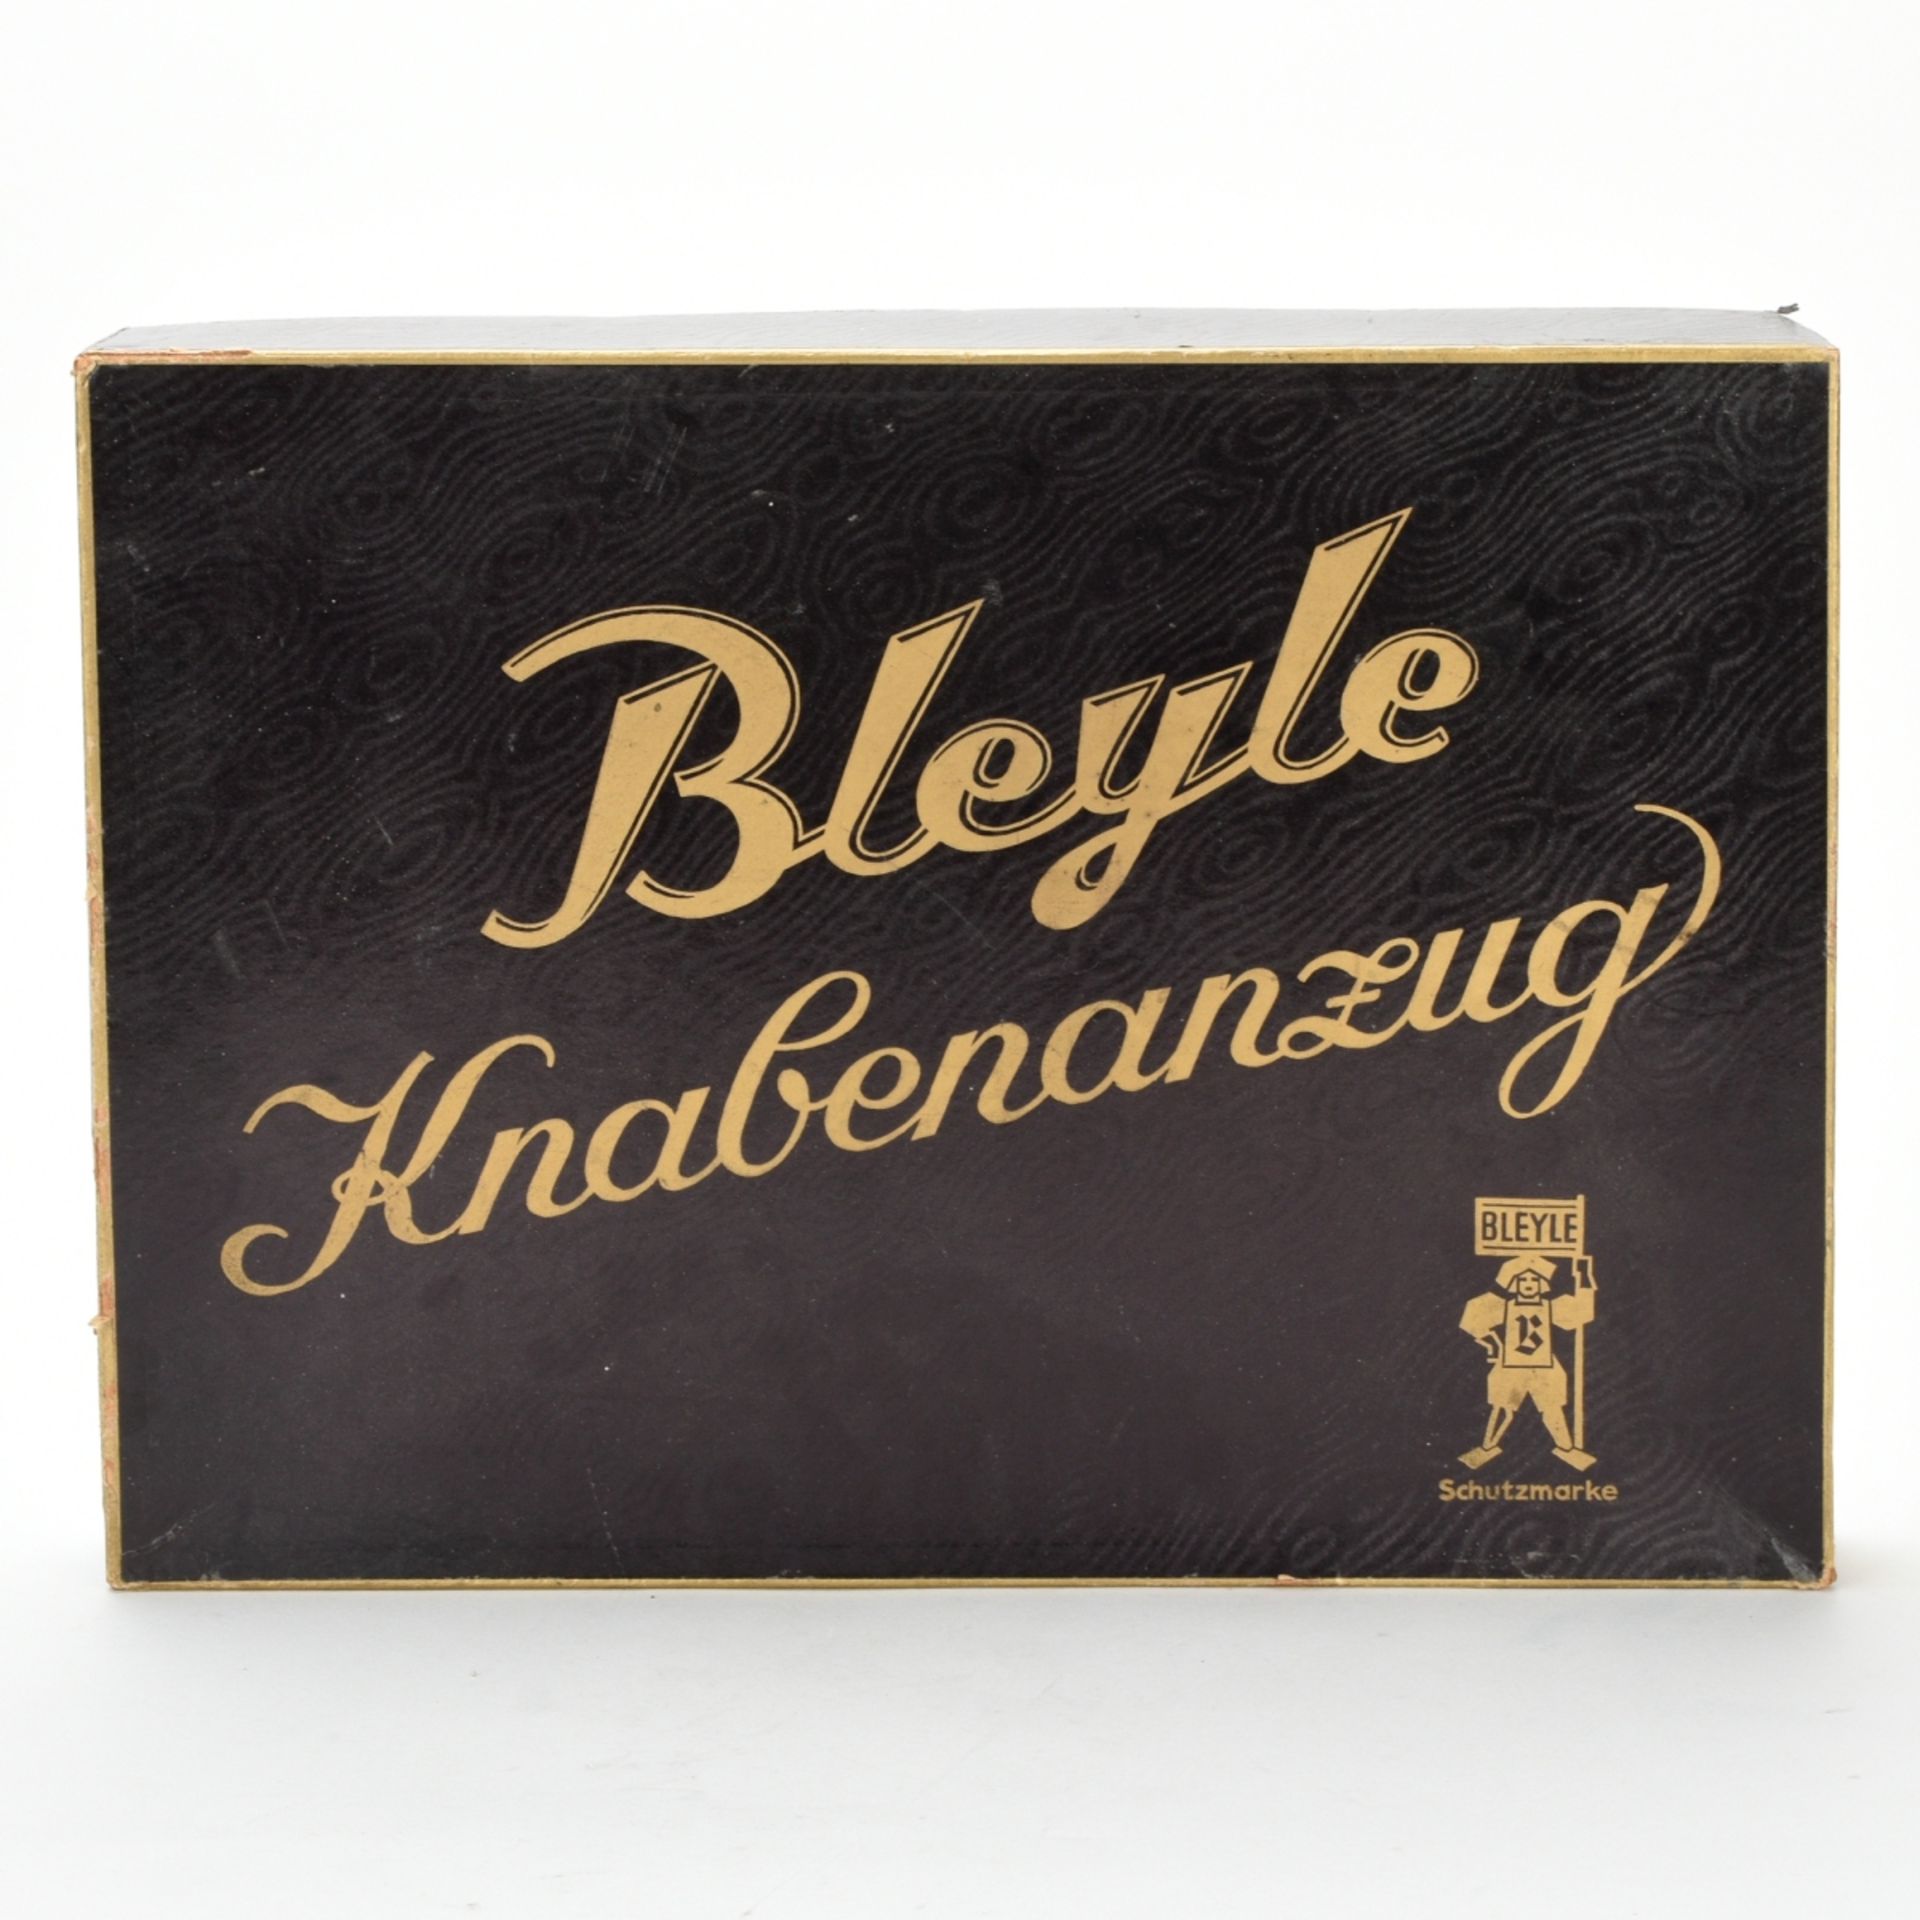 Bleyle-Werbeplakat und -Originalschachtel - Image 2 of 3